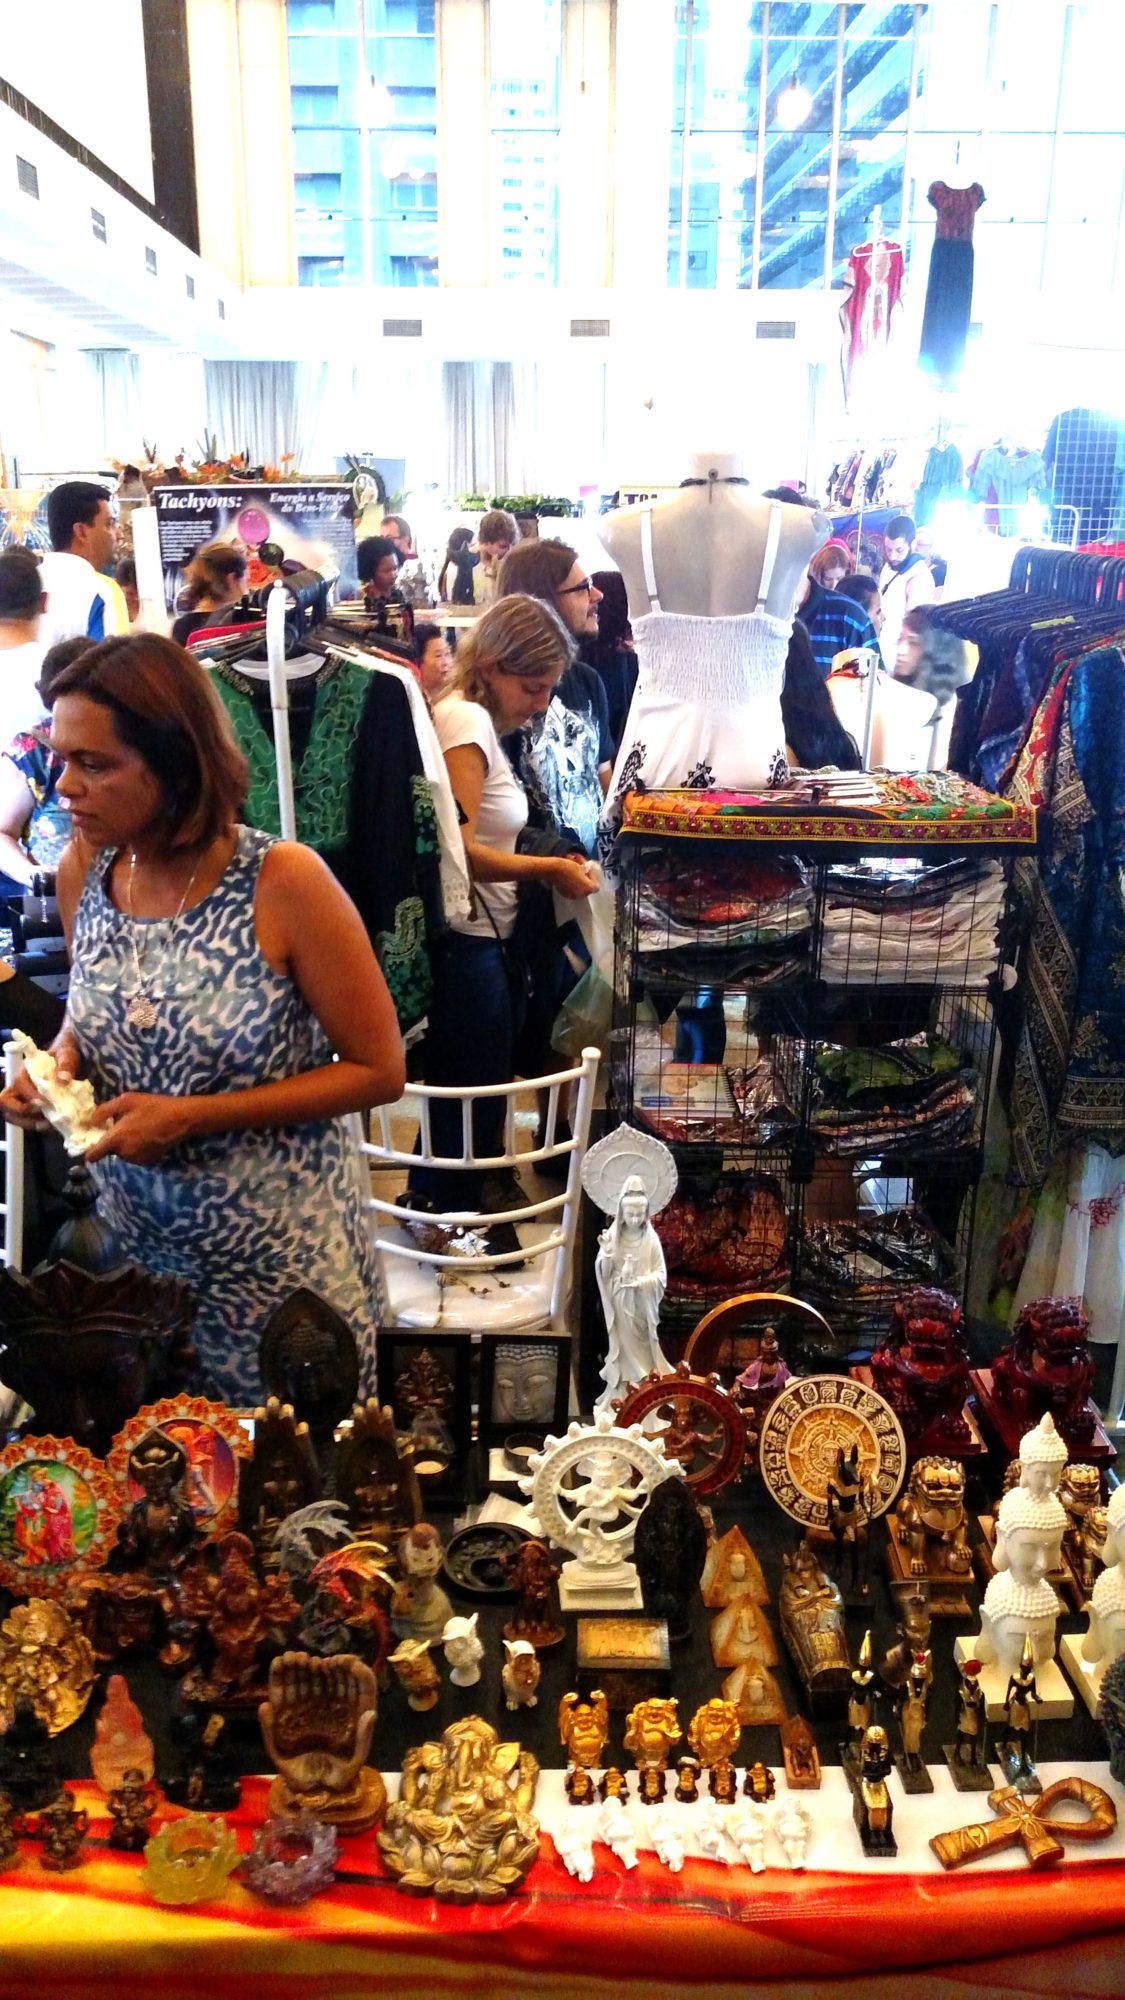 Mercado Místico - Feira Mística - Club Homs - Guia da Semana